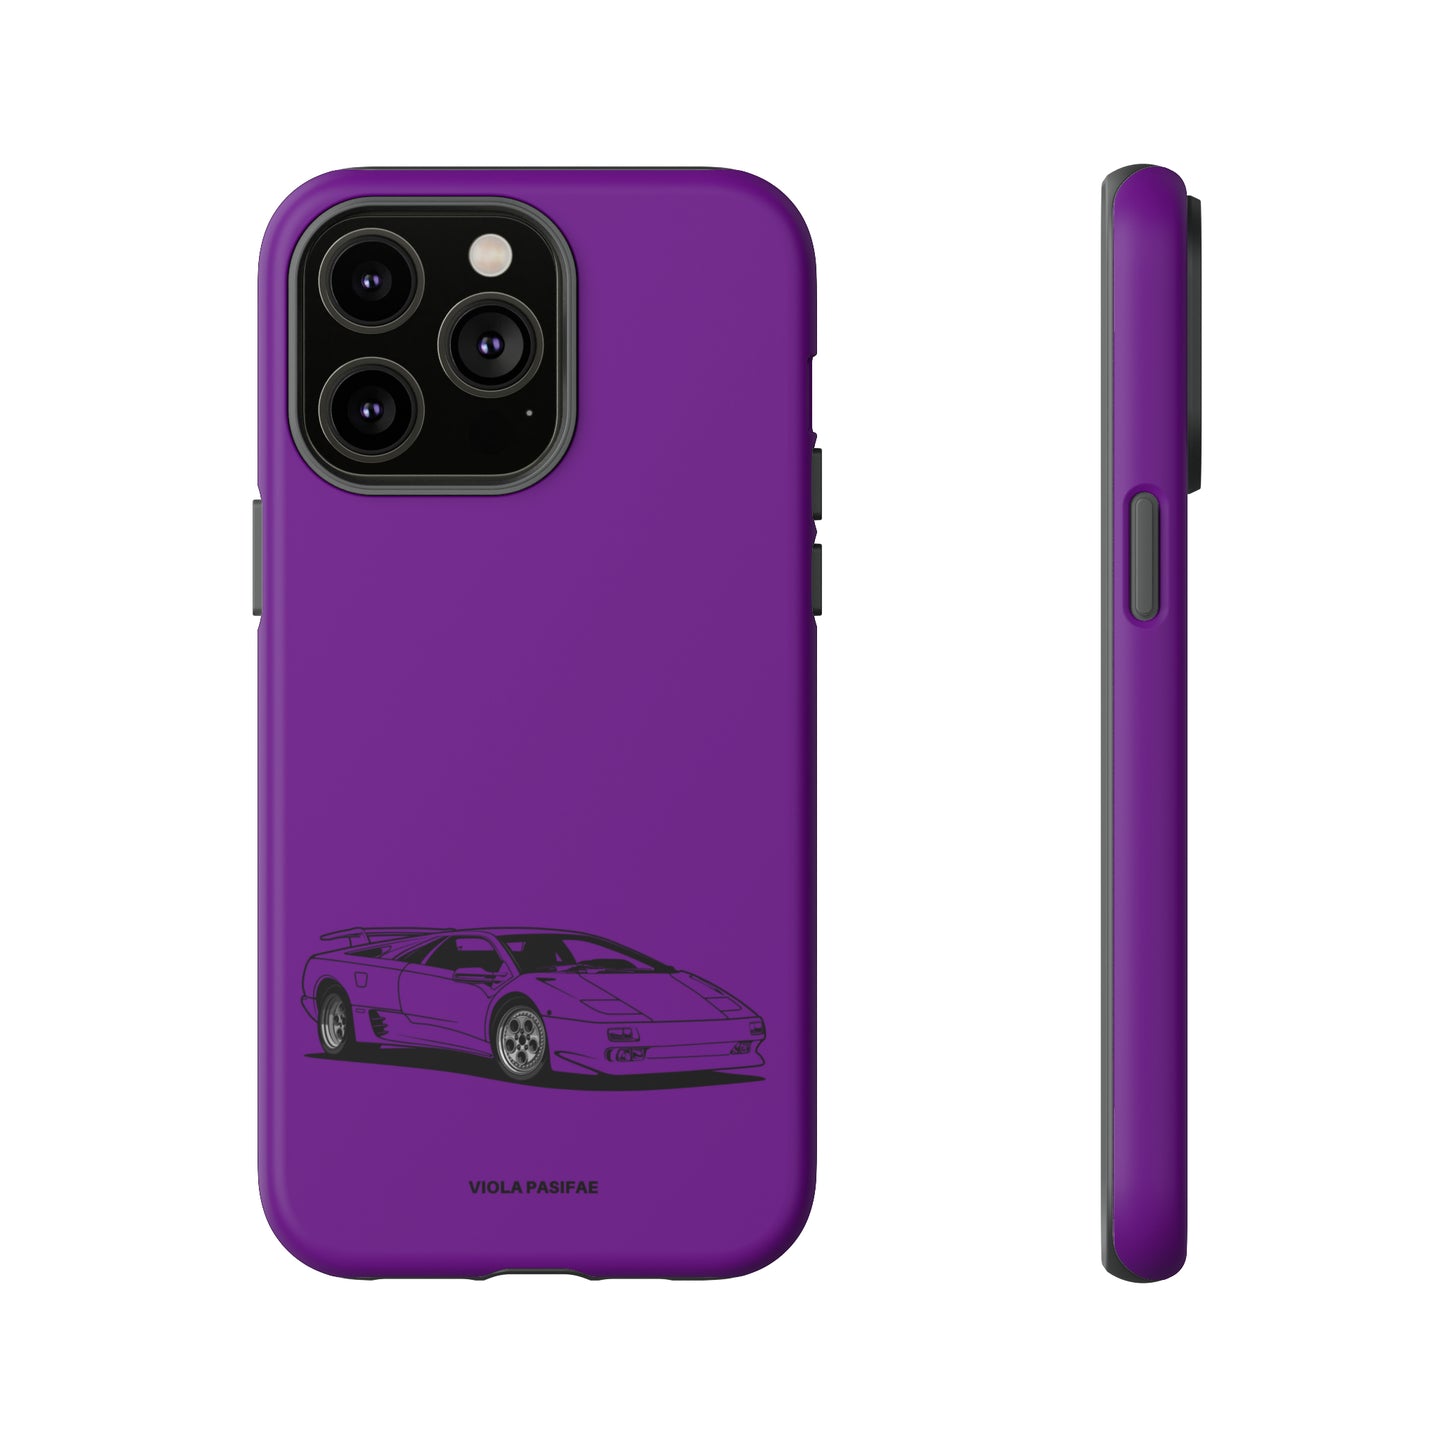 Viola Pasifae - Tough Case iPhone/Samsung/Pixel